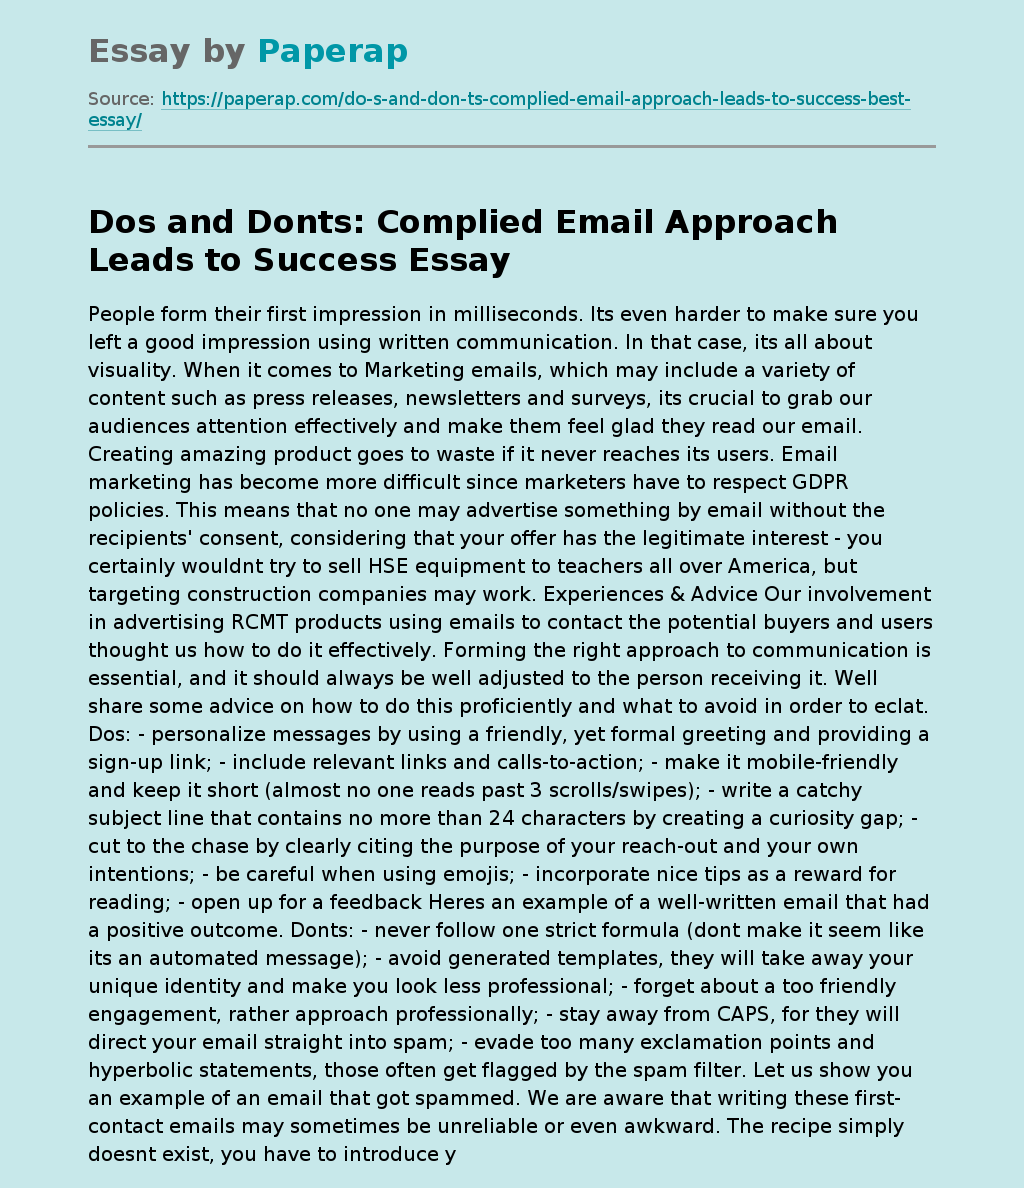 Dos and Donts: Complied Email Approach Leads to Success